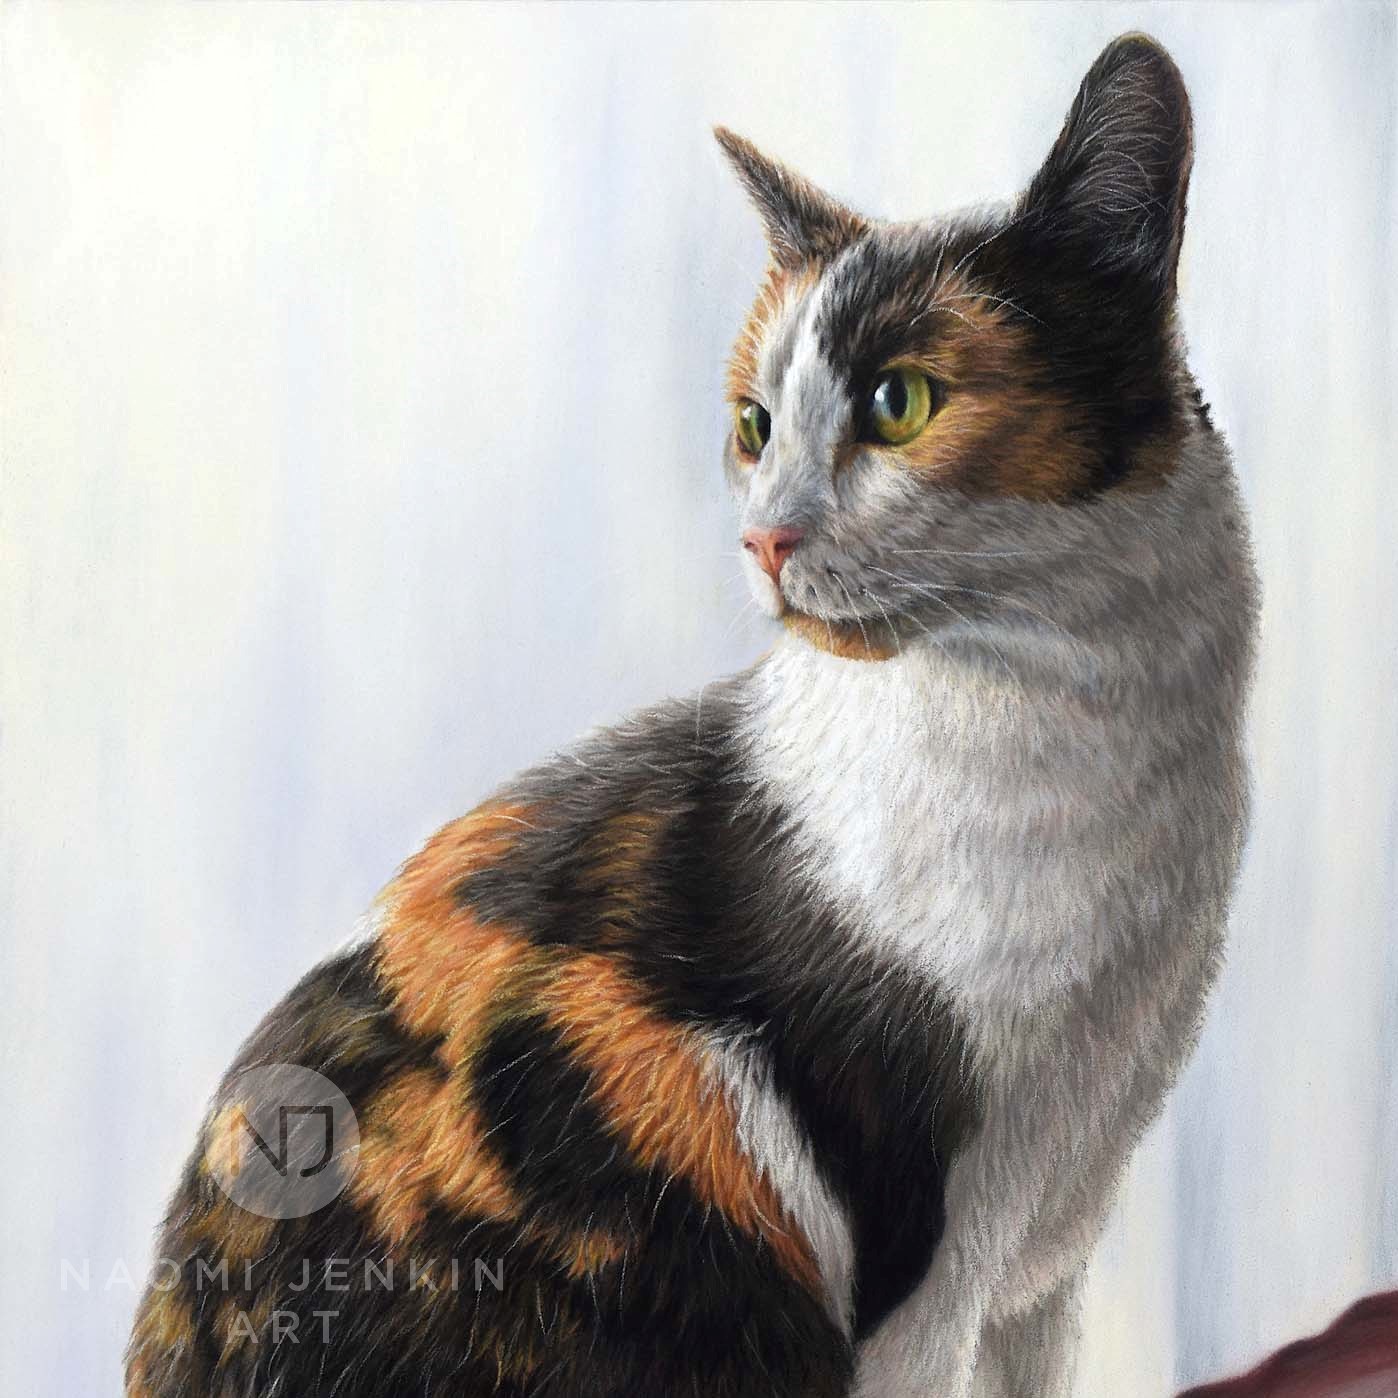 Cat portrait in pastels by Naomi Jenkin Art. 